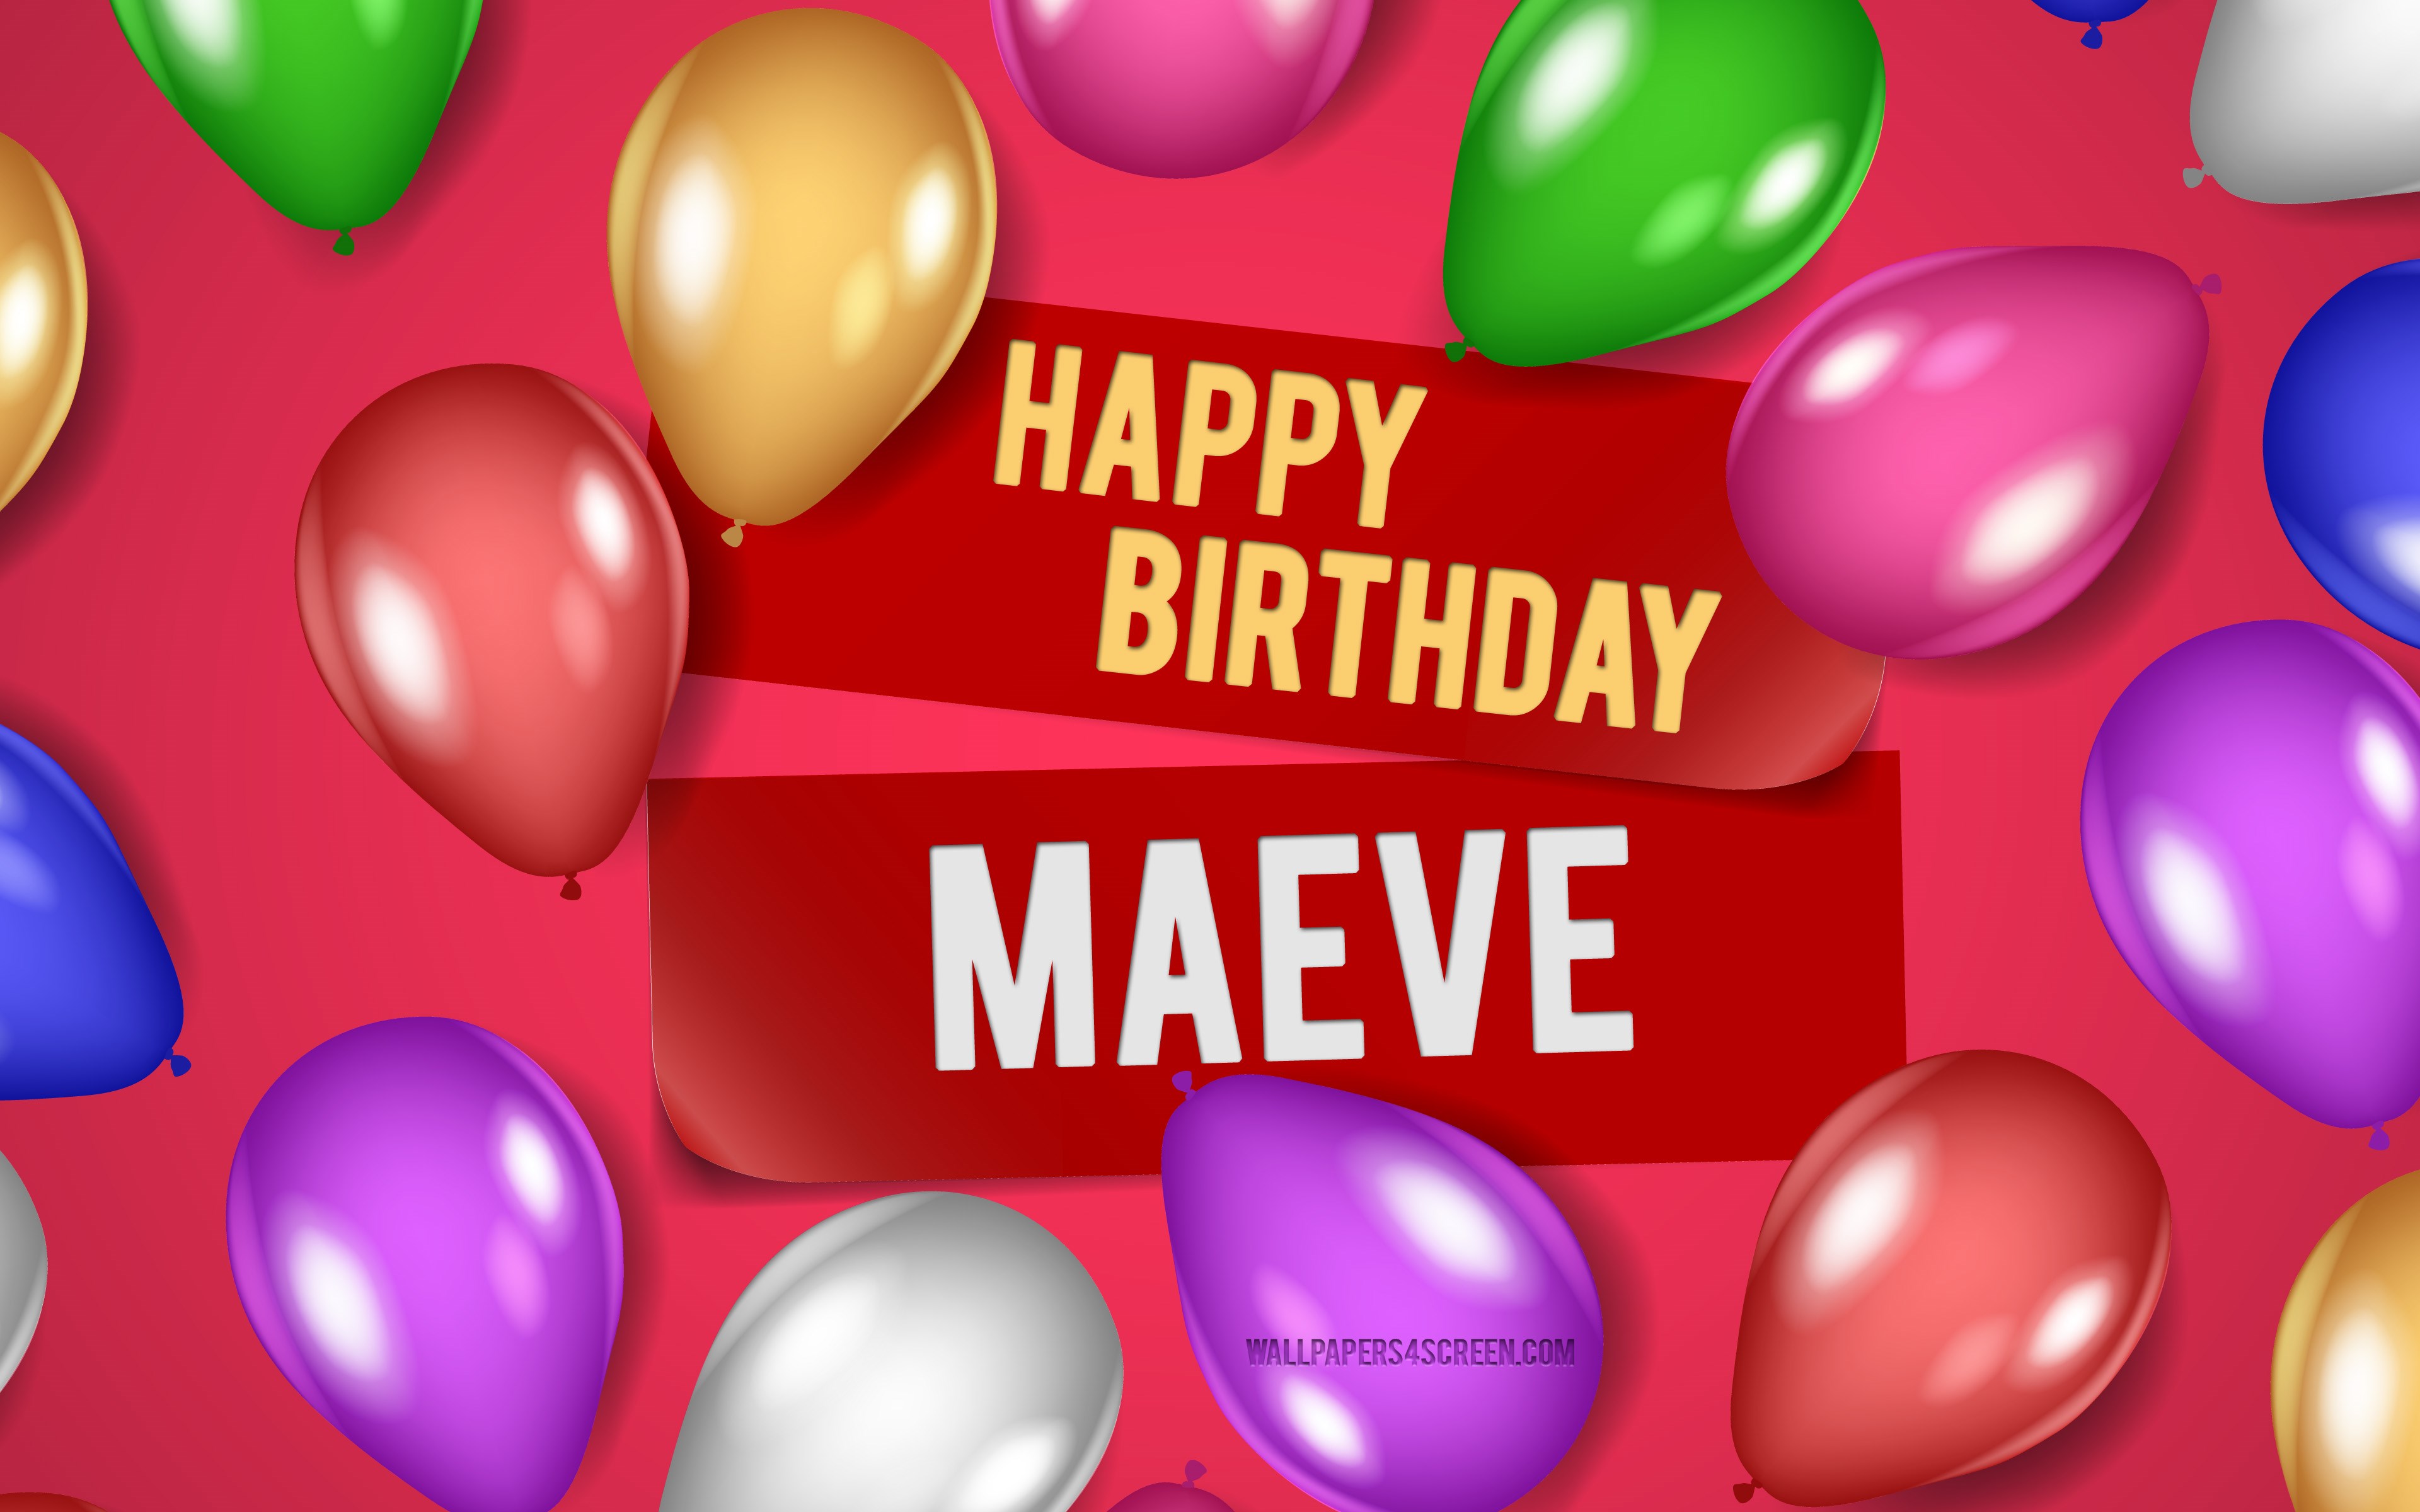 바탕 화면 다운로드 4k, 메이브 생일 축하해, 분홍색 배경, 메이브 생일, 현실적인 풍선, 인기있는 미국 여성 이름, 매에브 이름, maeve 이름이 있는 사진, 매에브